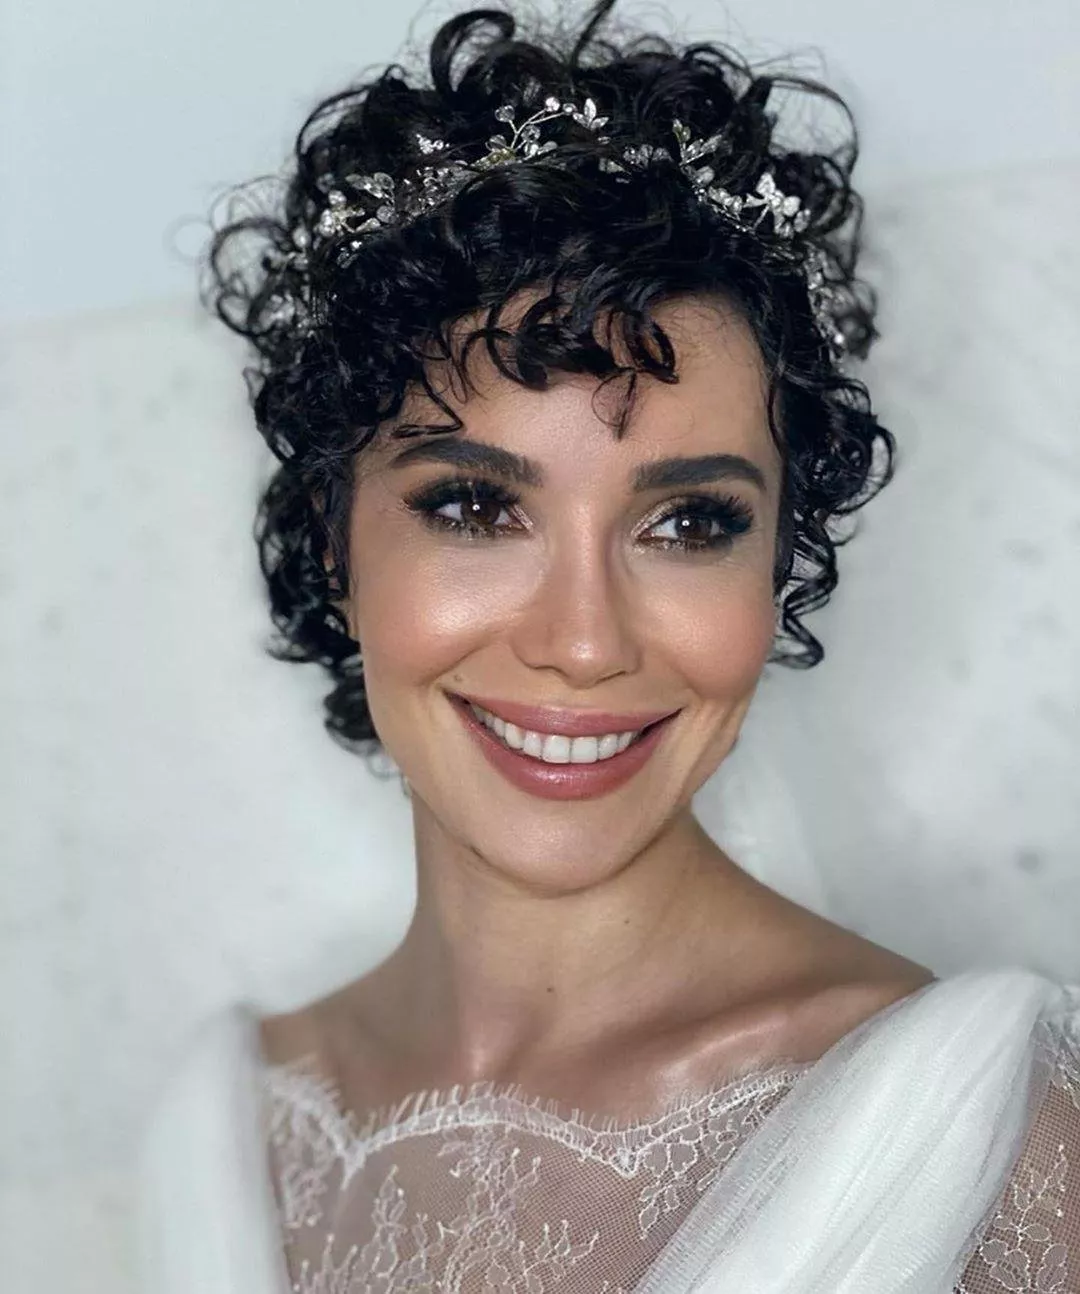 صور حفل زفاف الممثلة التركية سونغل اودن، بطلة مسلسل نور